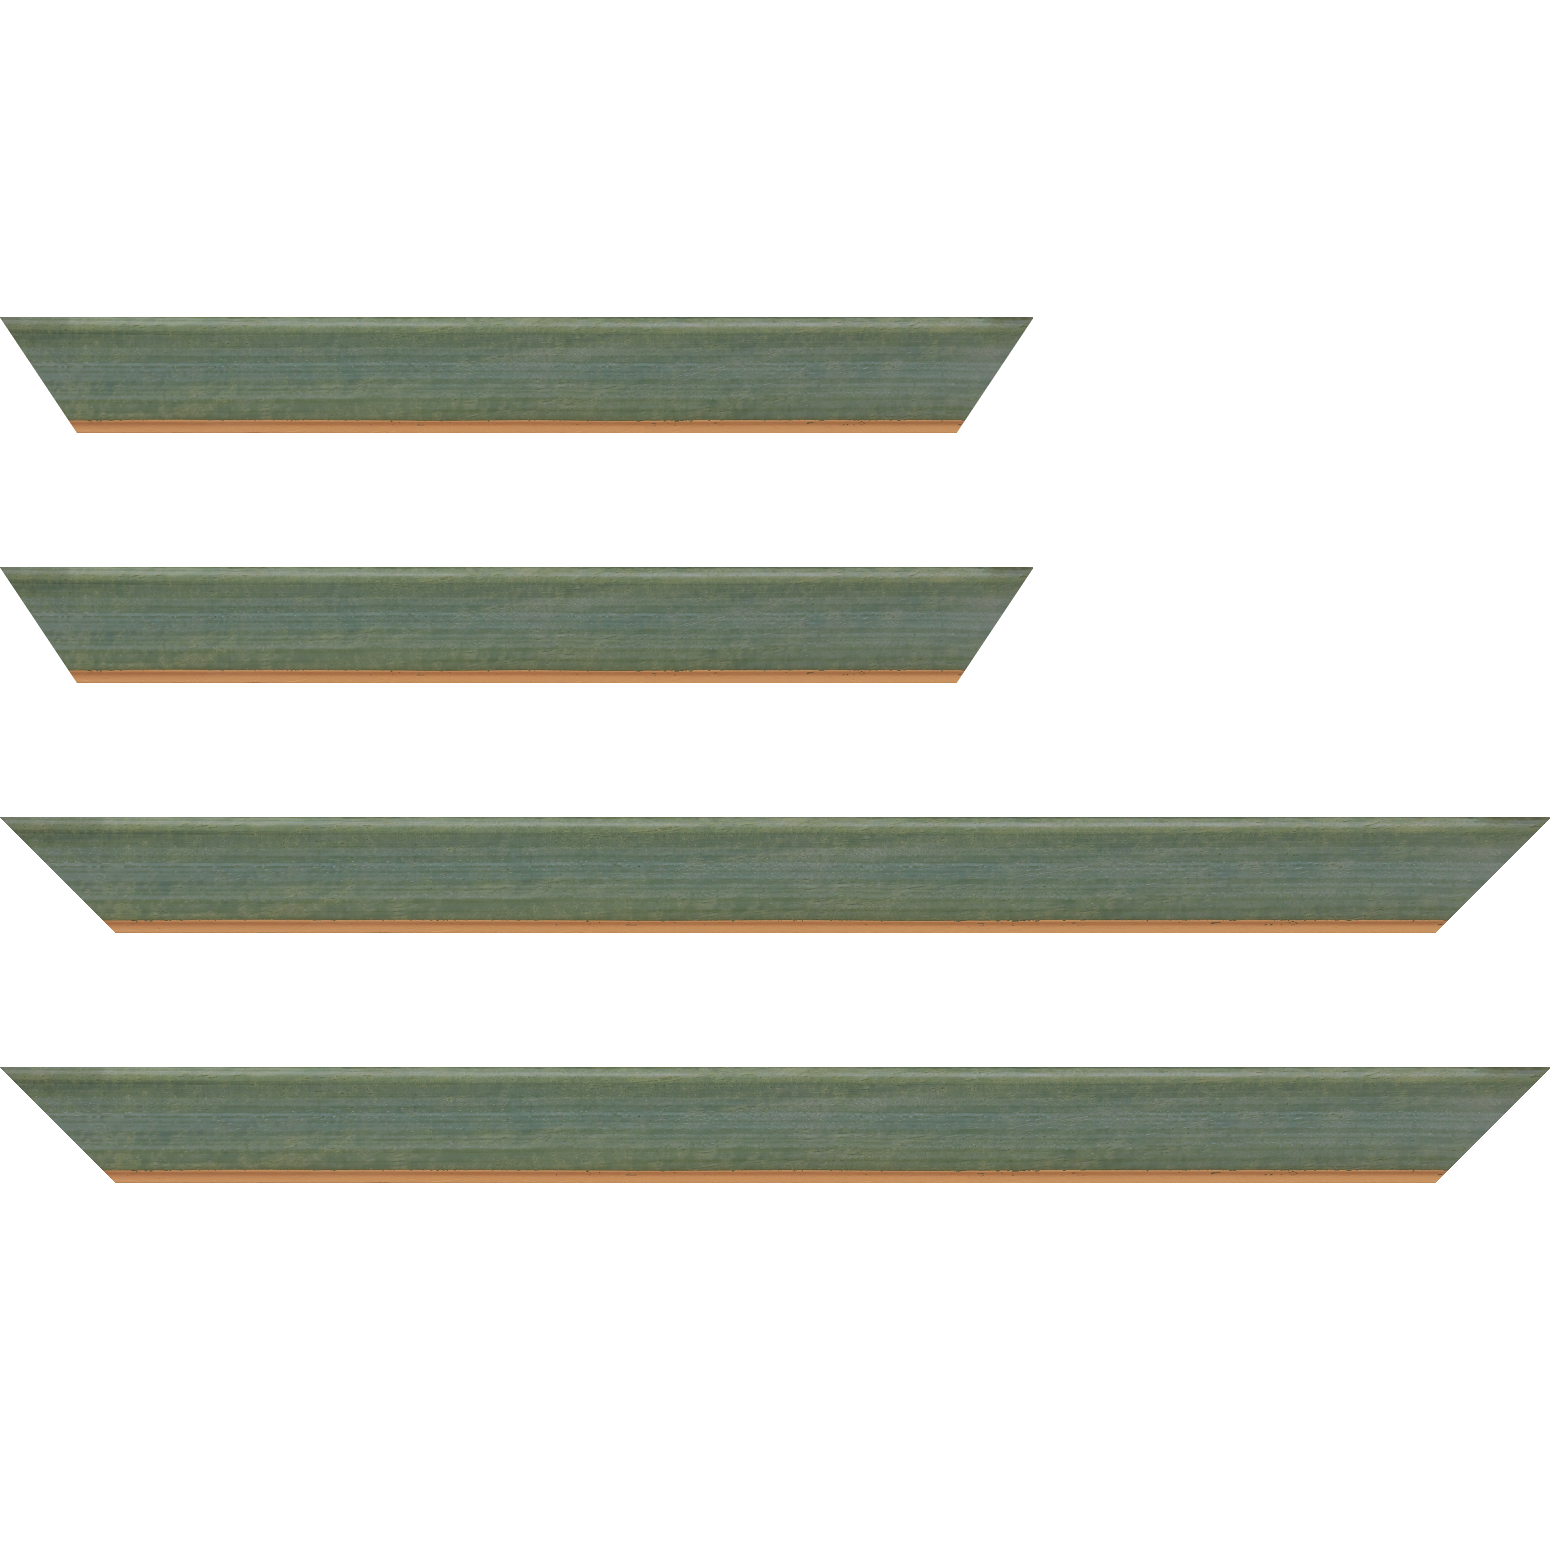 Baguette bois profil incurvé largeur 3.9cm couleur vert amande satiné filet or - 50x60